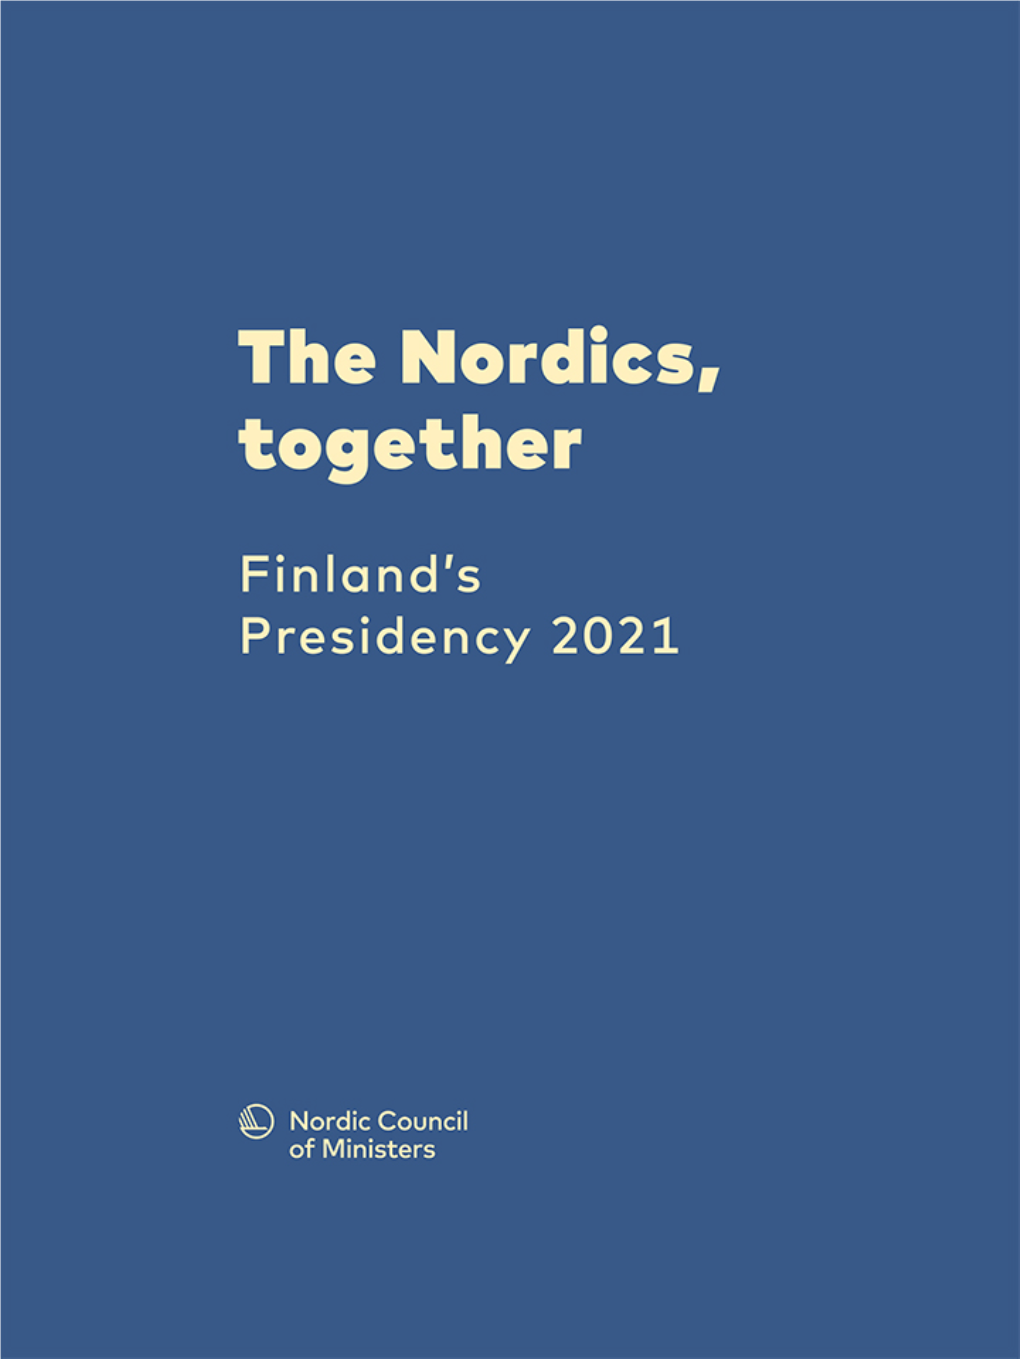 Finland's Presidency 2021